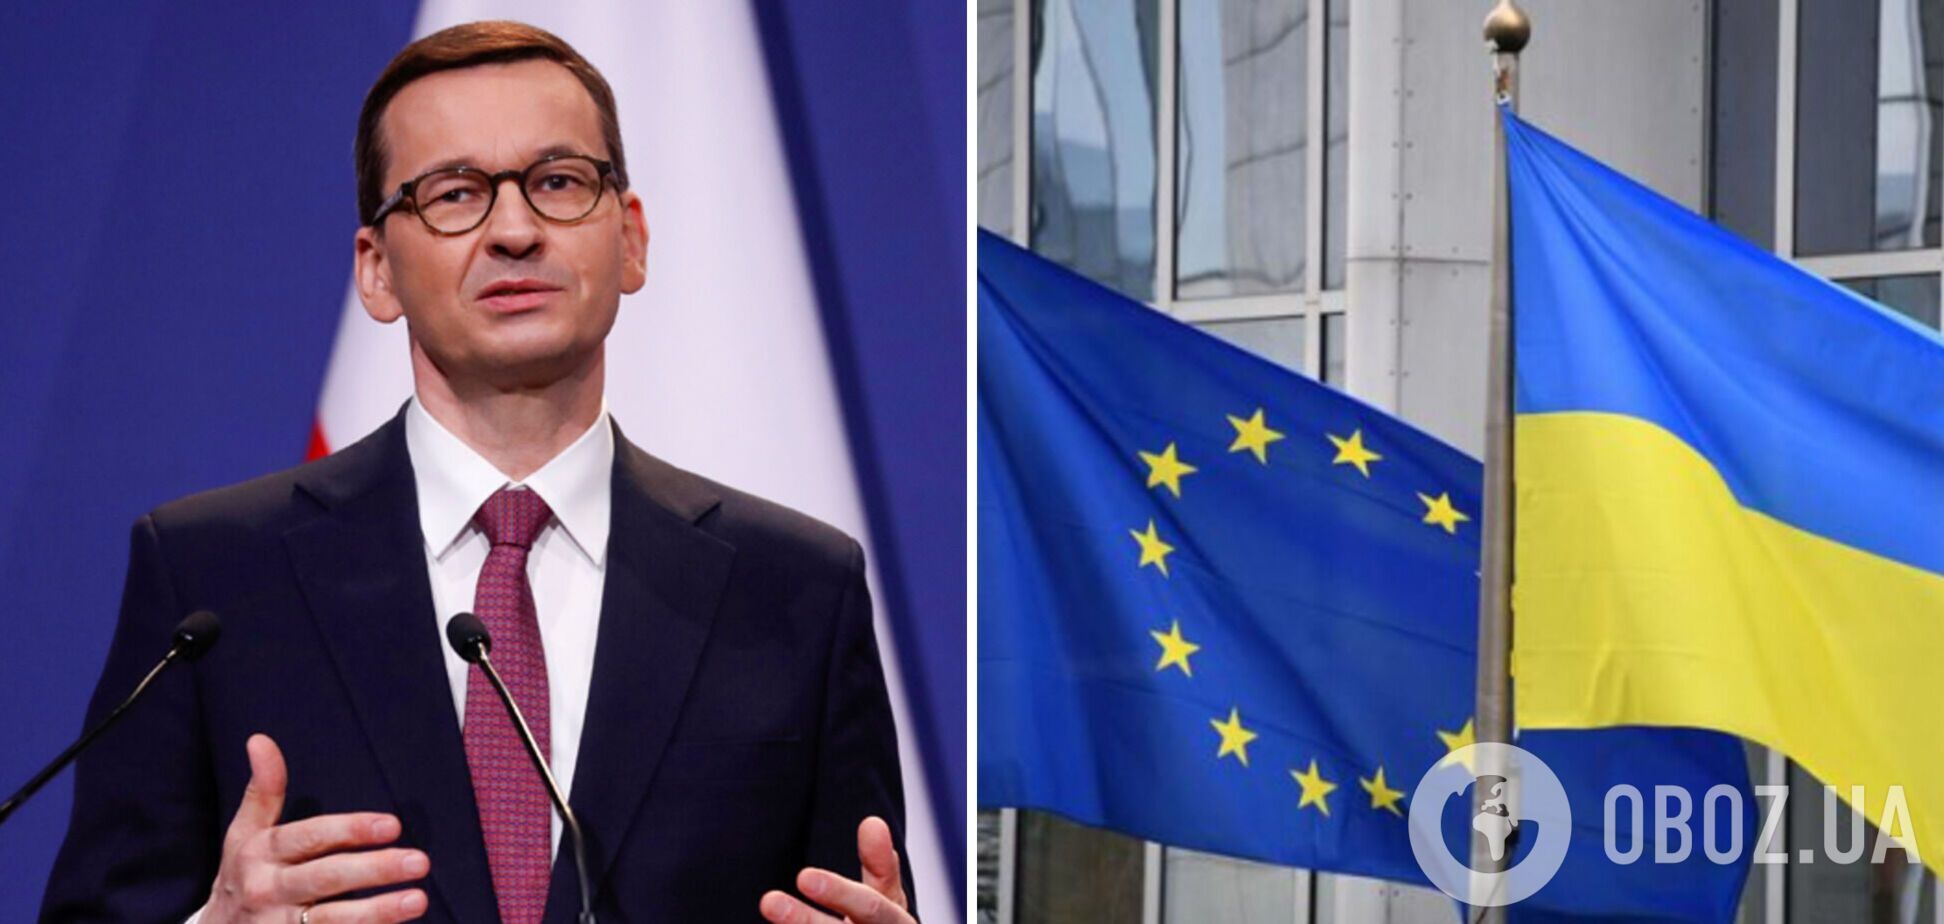 Прем’єр Польщі: Європа буде повністю об’єднаною лише Україною як членом ЄС